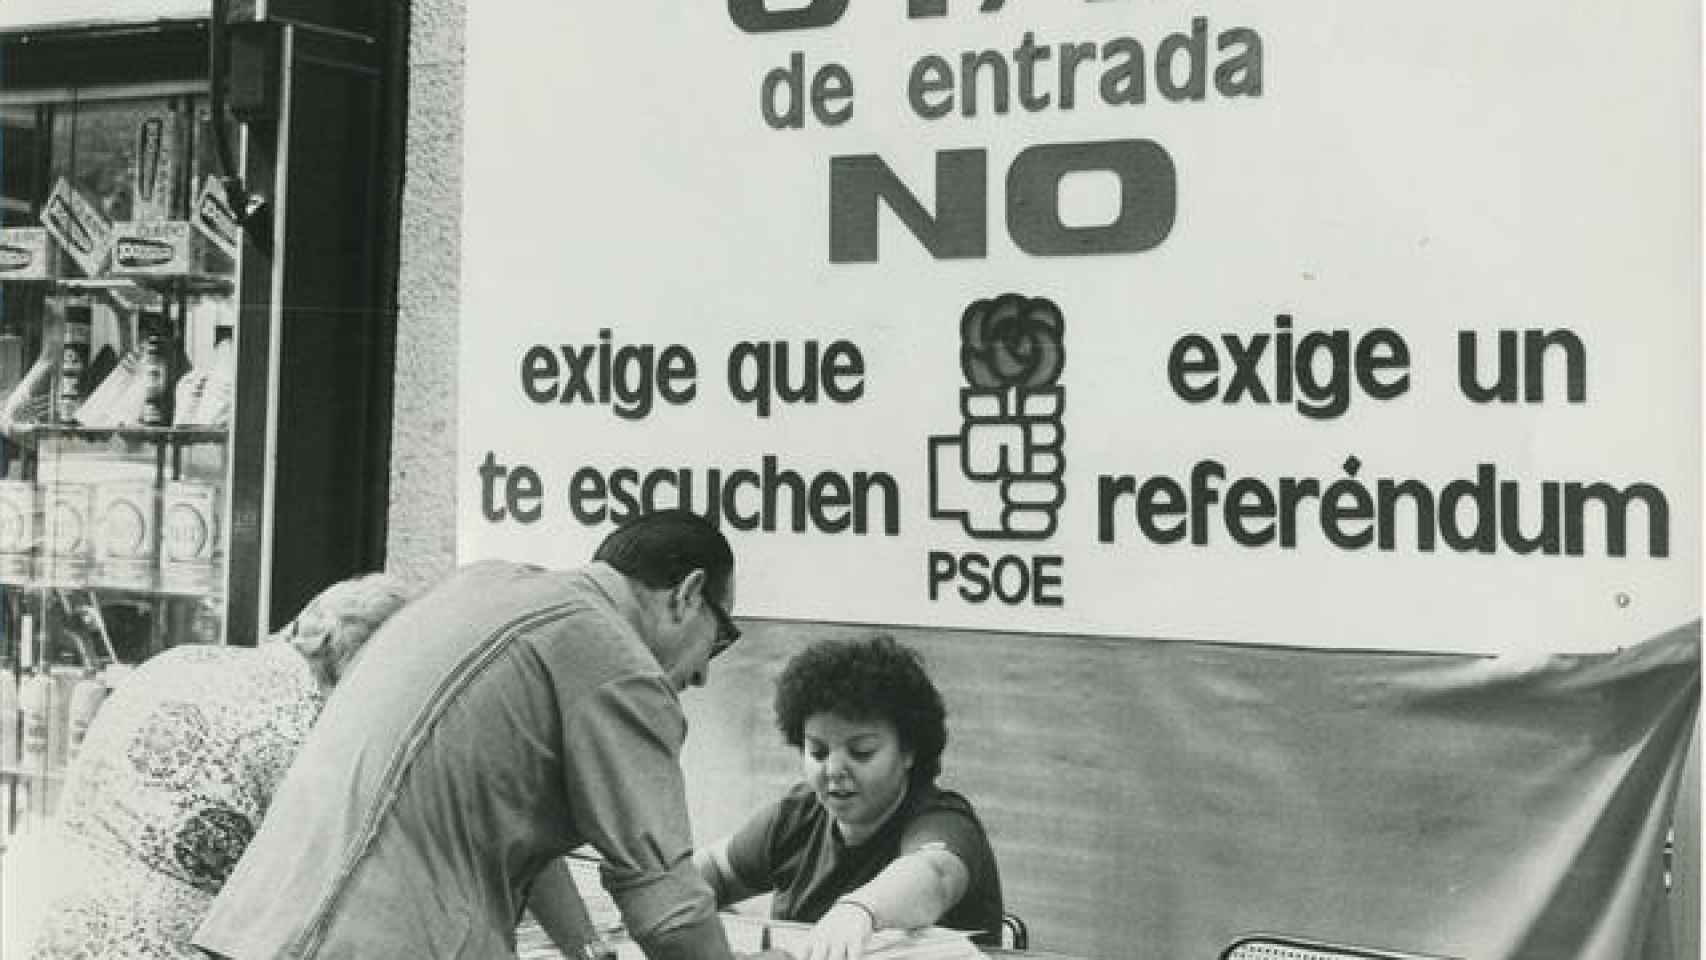 Mesa instalada por el PSOE para recoger firmas en apoyo de su postura respecto al ingreso de España en la OTAN, en septiembre de 1981.